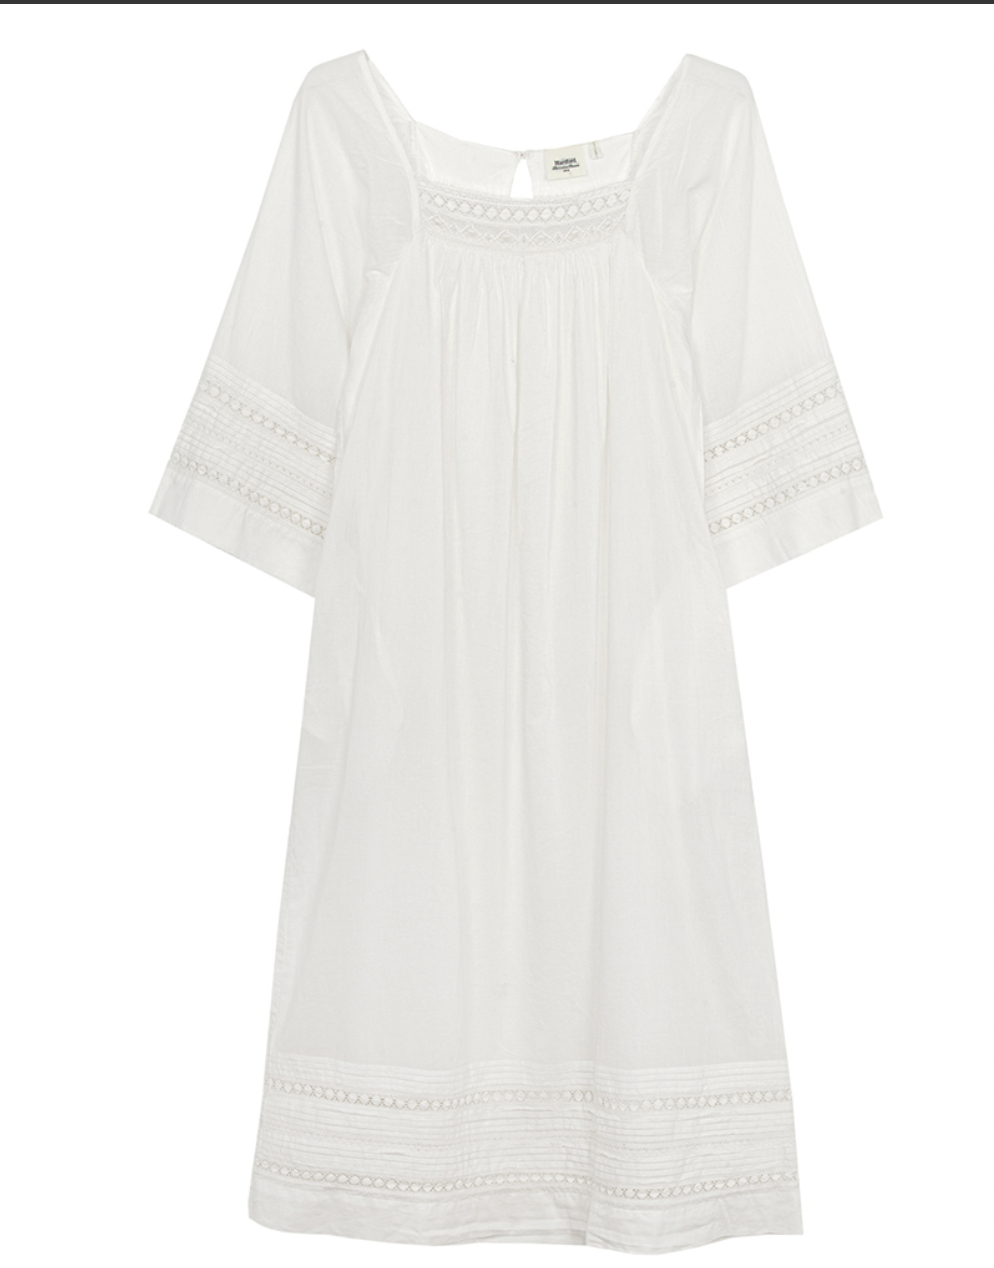 ria dress white-1